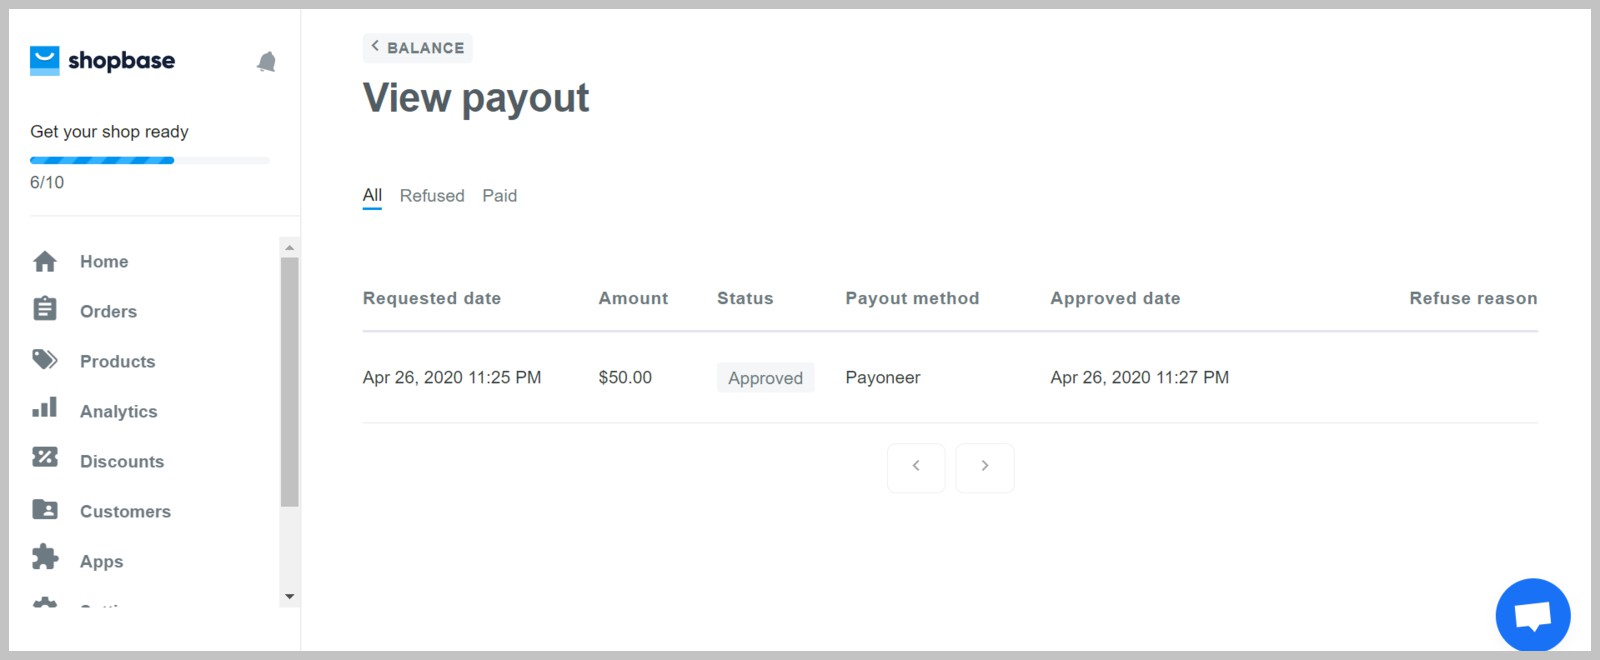 Trang View payout giúp bạn theo dõi các khoản tiền được xuất về.